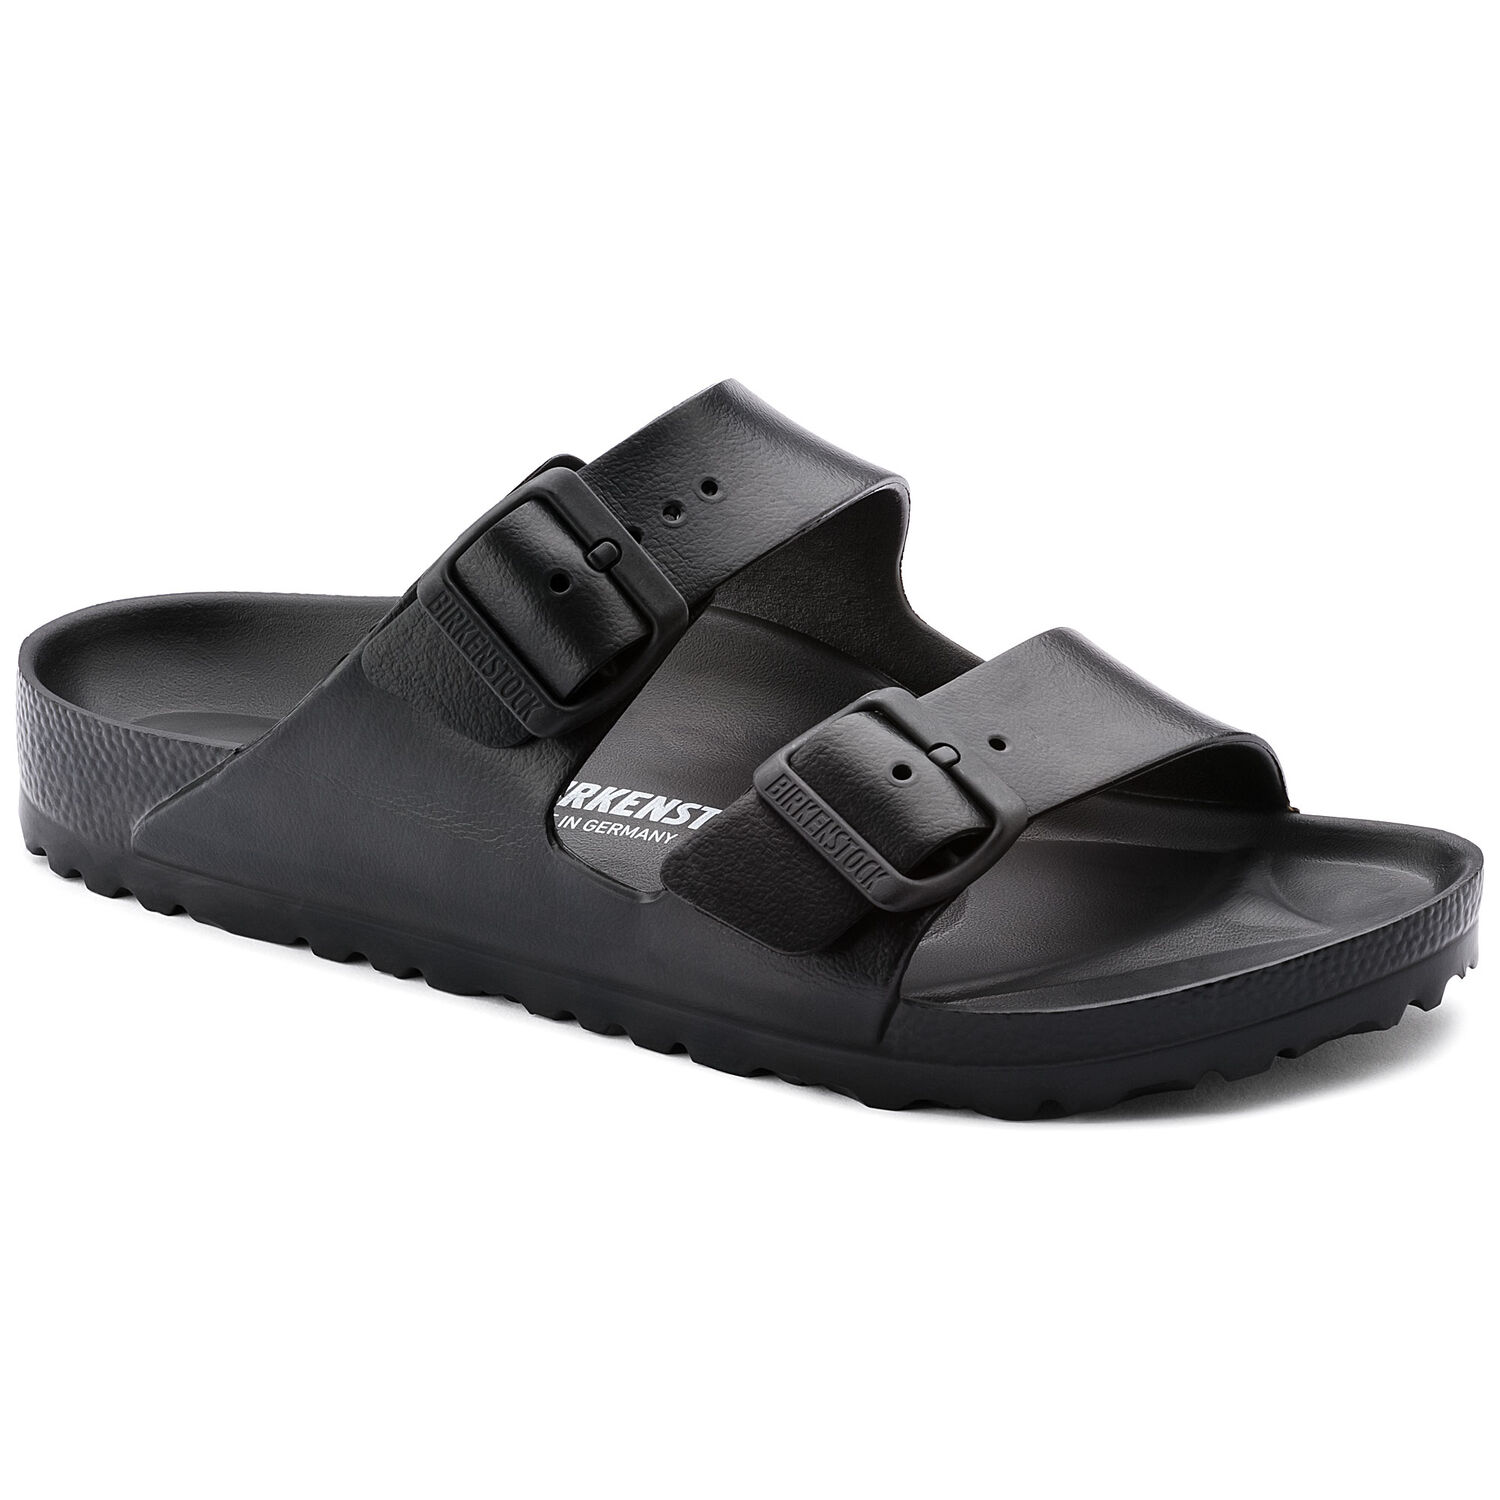 Une paire de sandales Birkenstock Arizona Essentials étroite couleur Noir sur un fond blanc. Les sandales ont une assise anatomique et une semelle extérieure en EVA souple. Les sandales ont deux boucles métalliques pour un ajustement sûr.